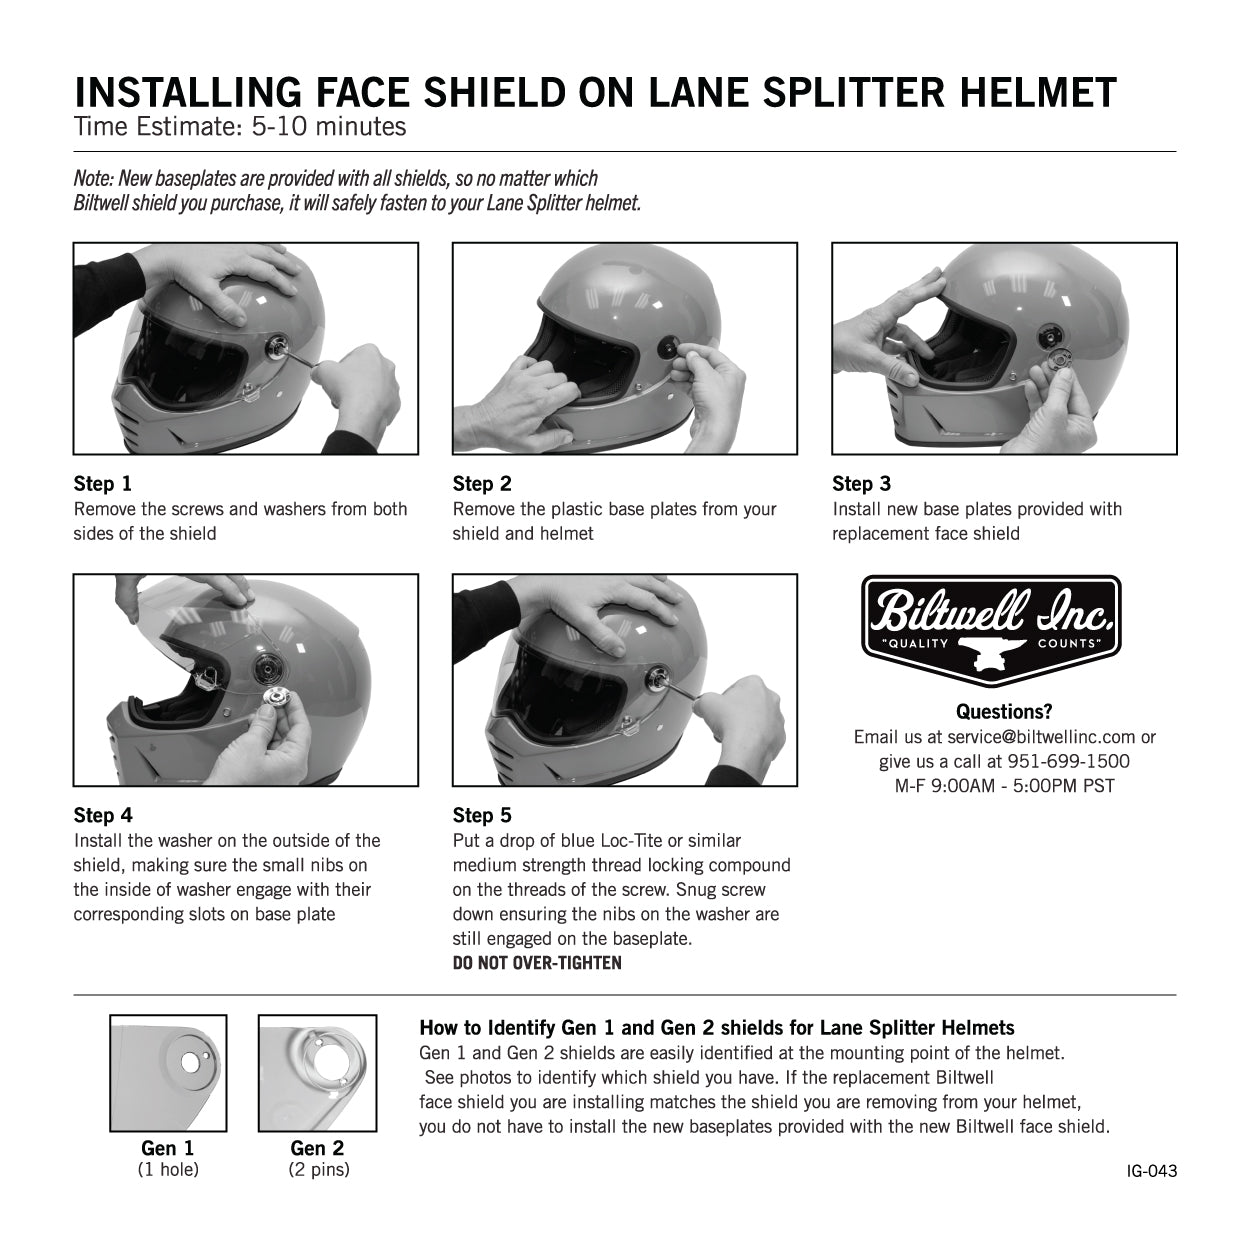 CLOSEOUT Lane Splitter ECE R22.05 Helmet - Gloss White